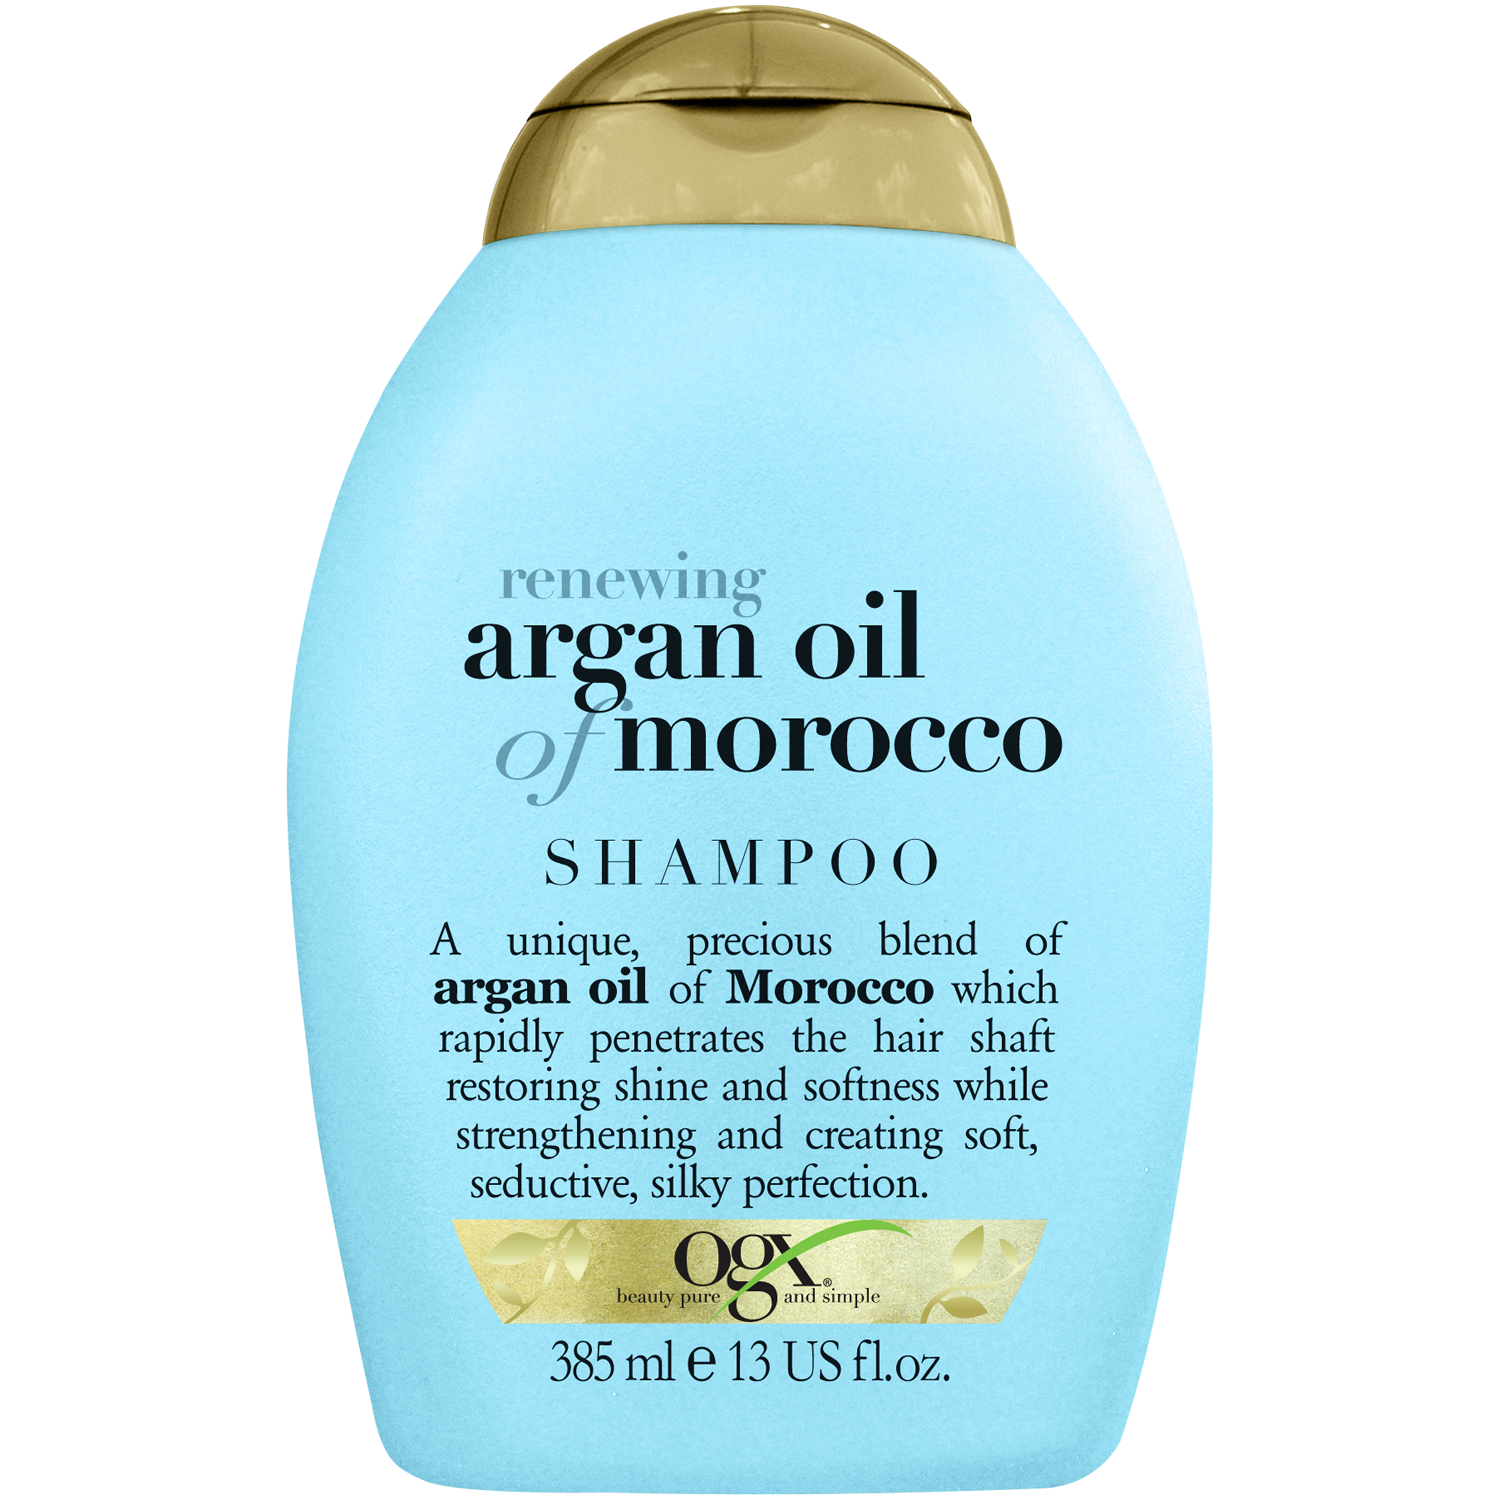 argan olive oil szampon beaua hebe